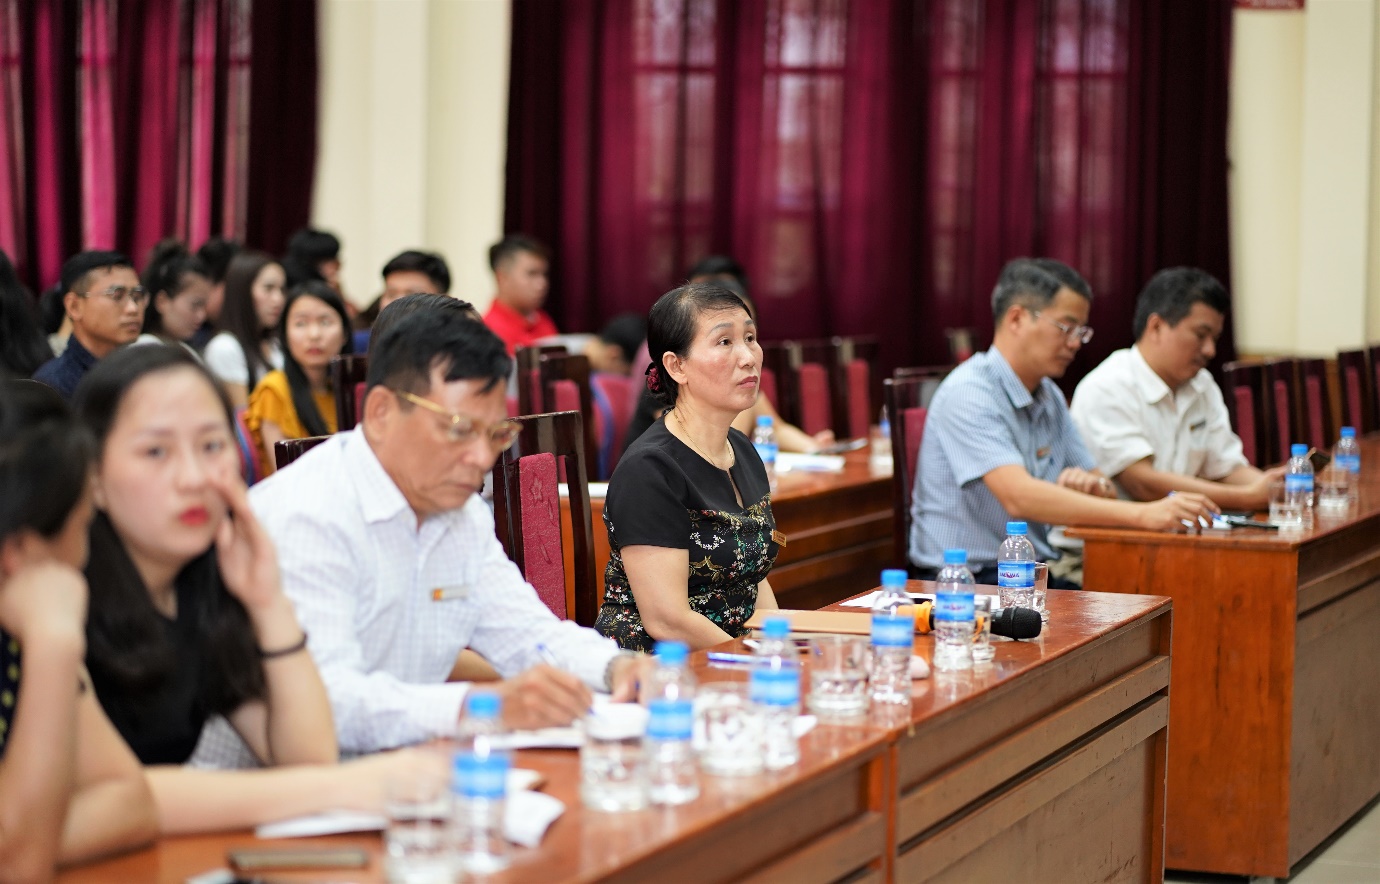 Họp triển khai Kế hoạch năm học 2019 -2020 cho Lưu học sinh đang học tại Trường Đại học Công nghiệp Hà Nội